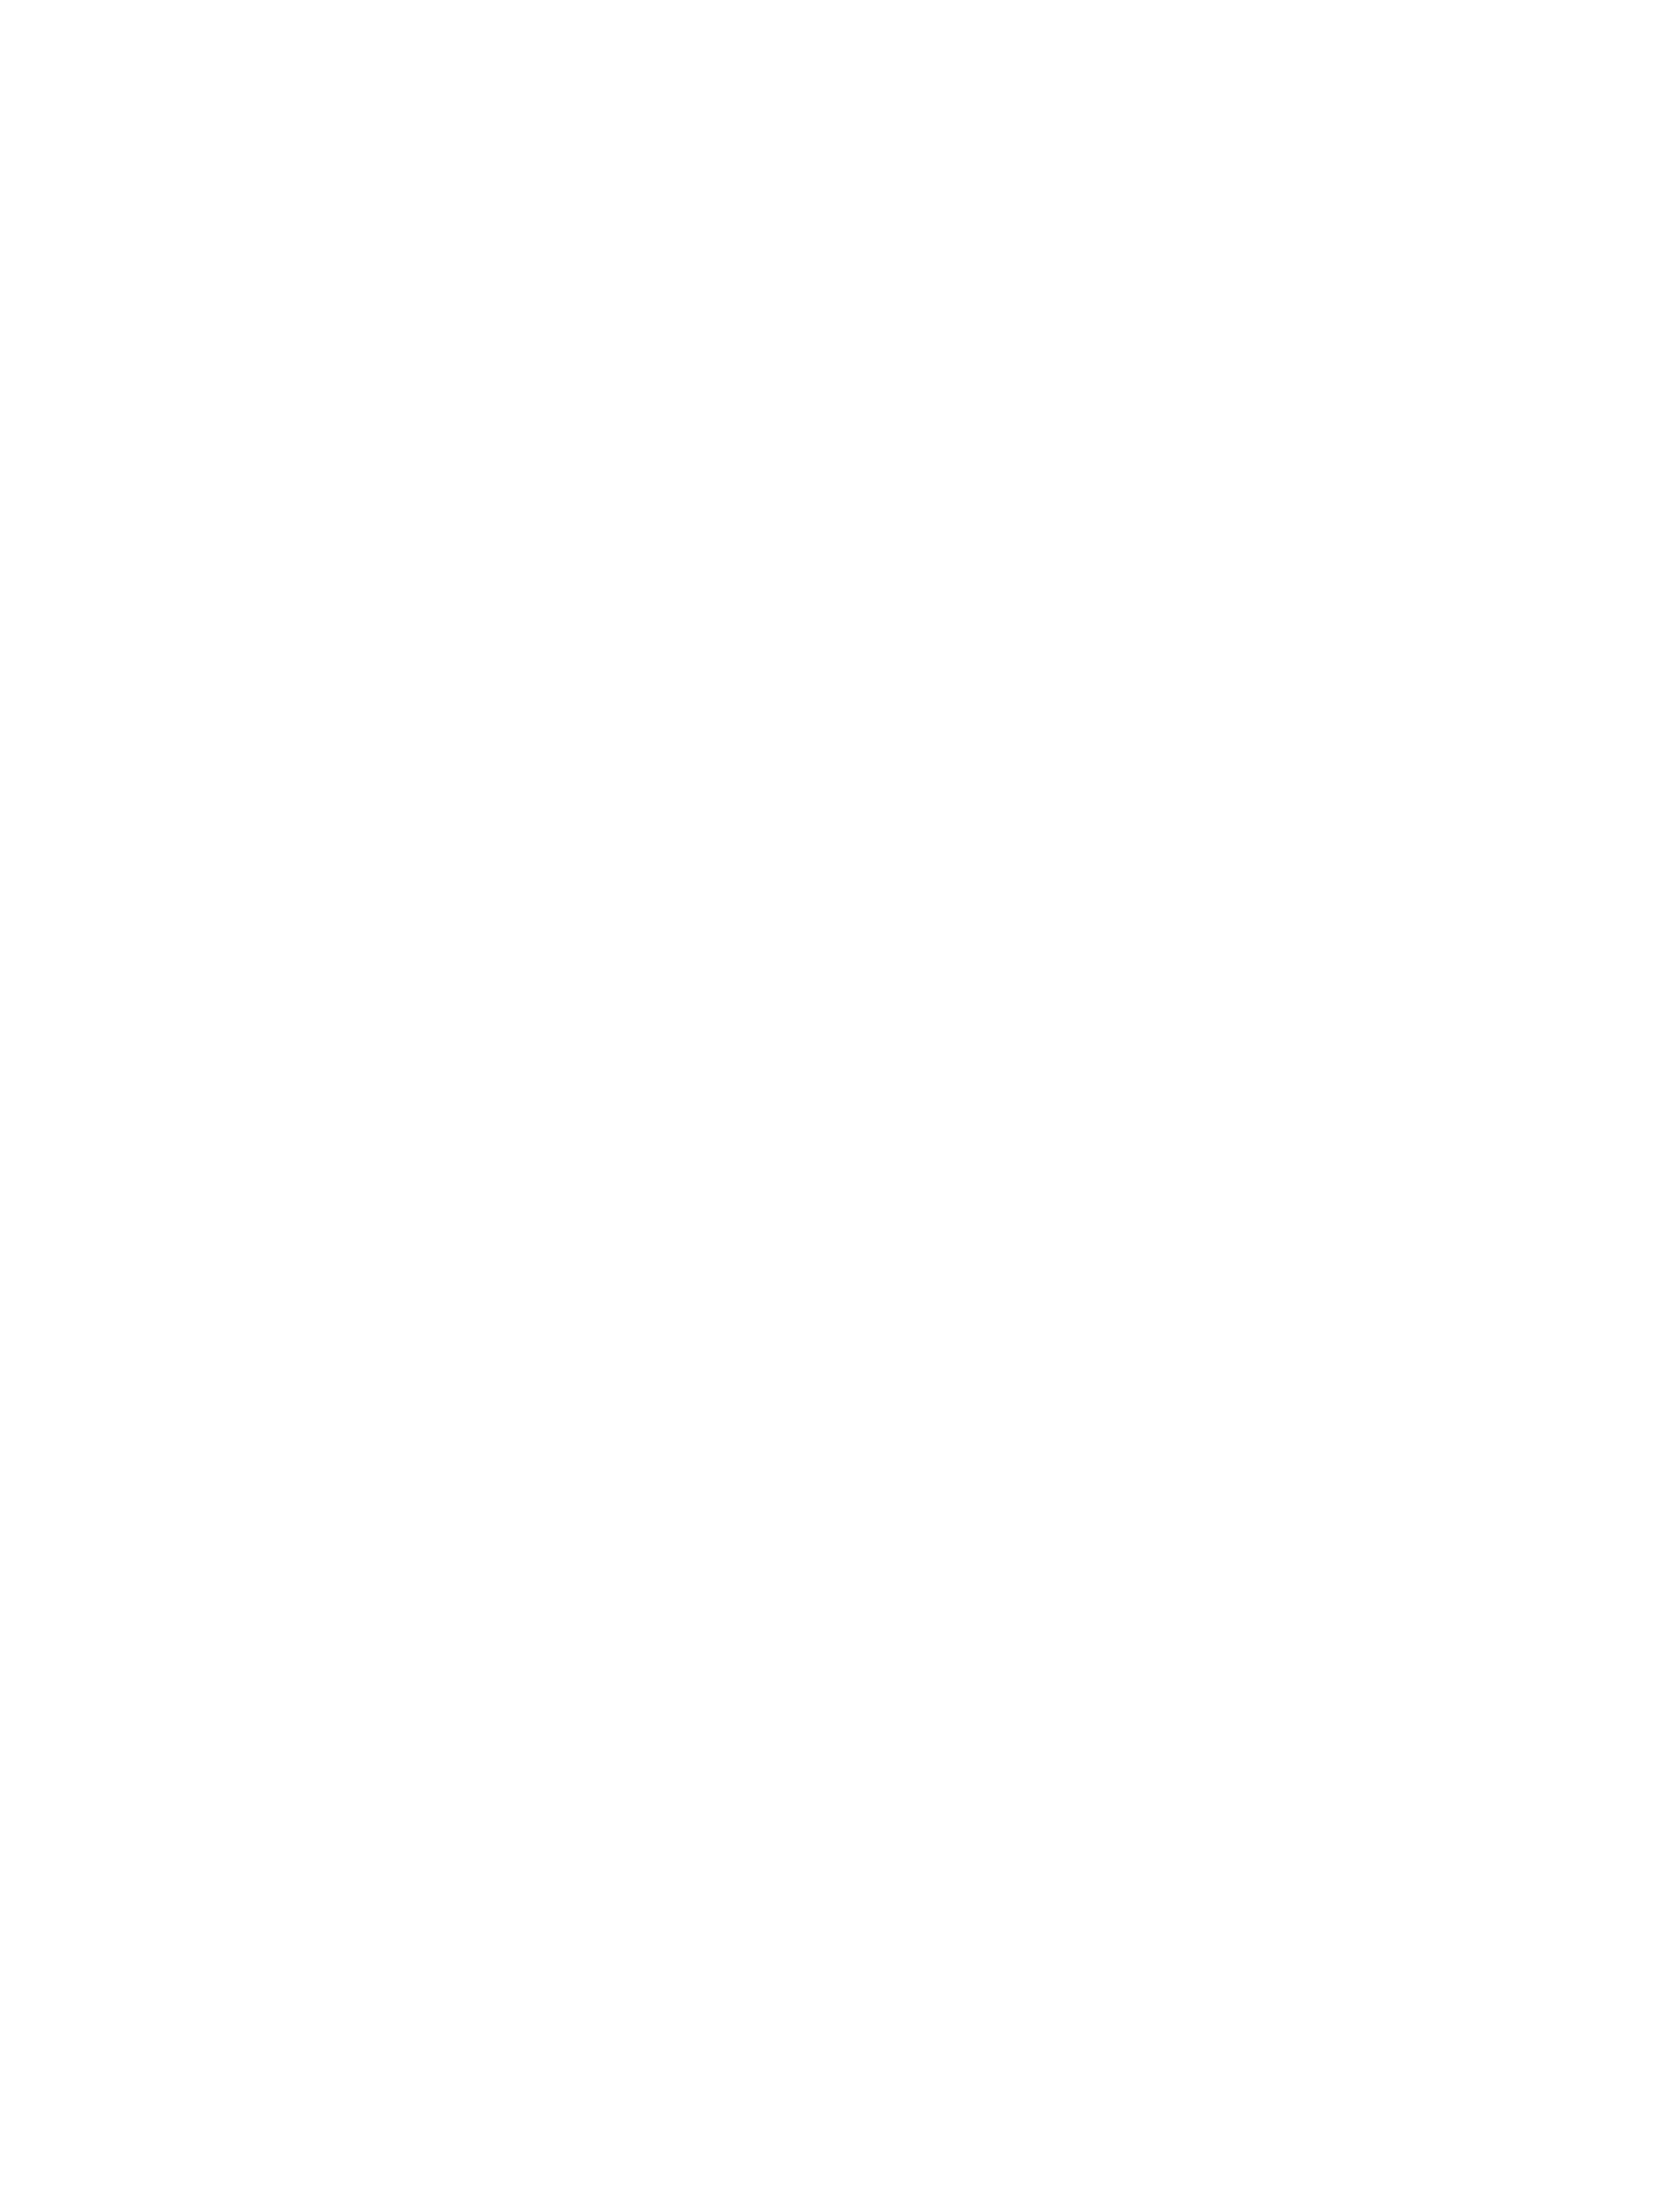 Вильгельм Генрих Шлезингер. Серия картин «Пять чувств», 1865 год. Зрение